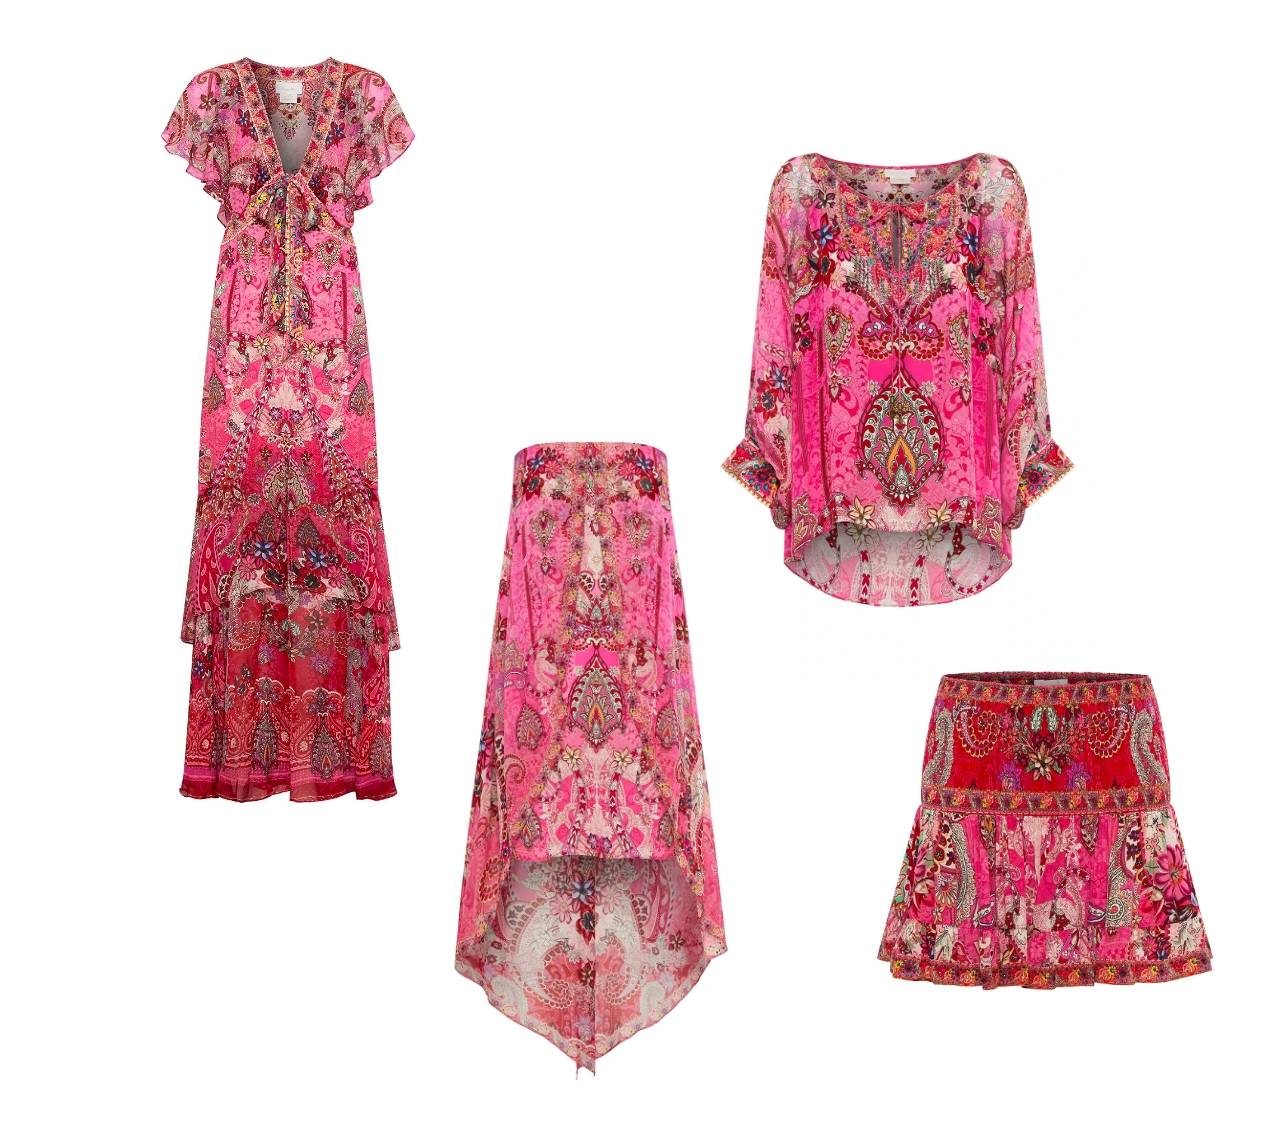 palisades paisley pink paisley printed dresses, skirts and tops